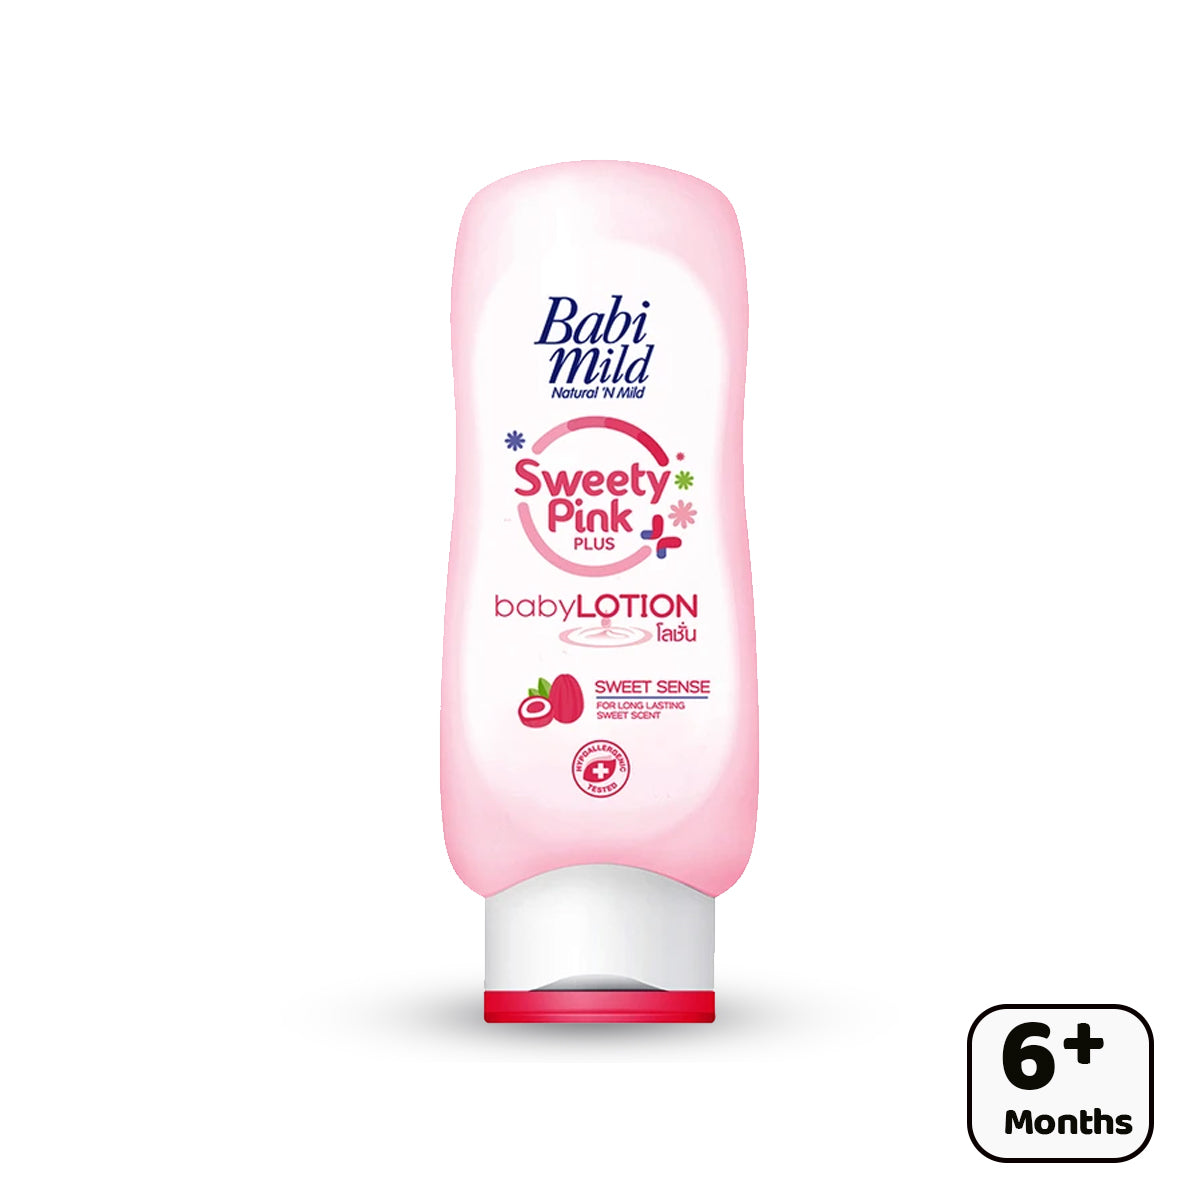 Babi Mild - Sweety Pink Plus Lotion (180ml)